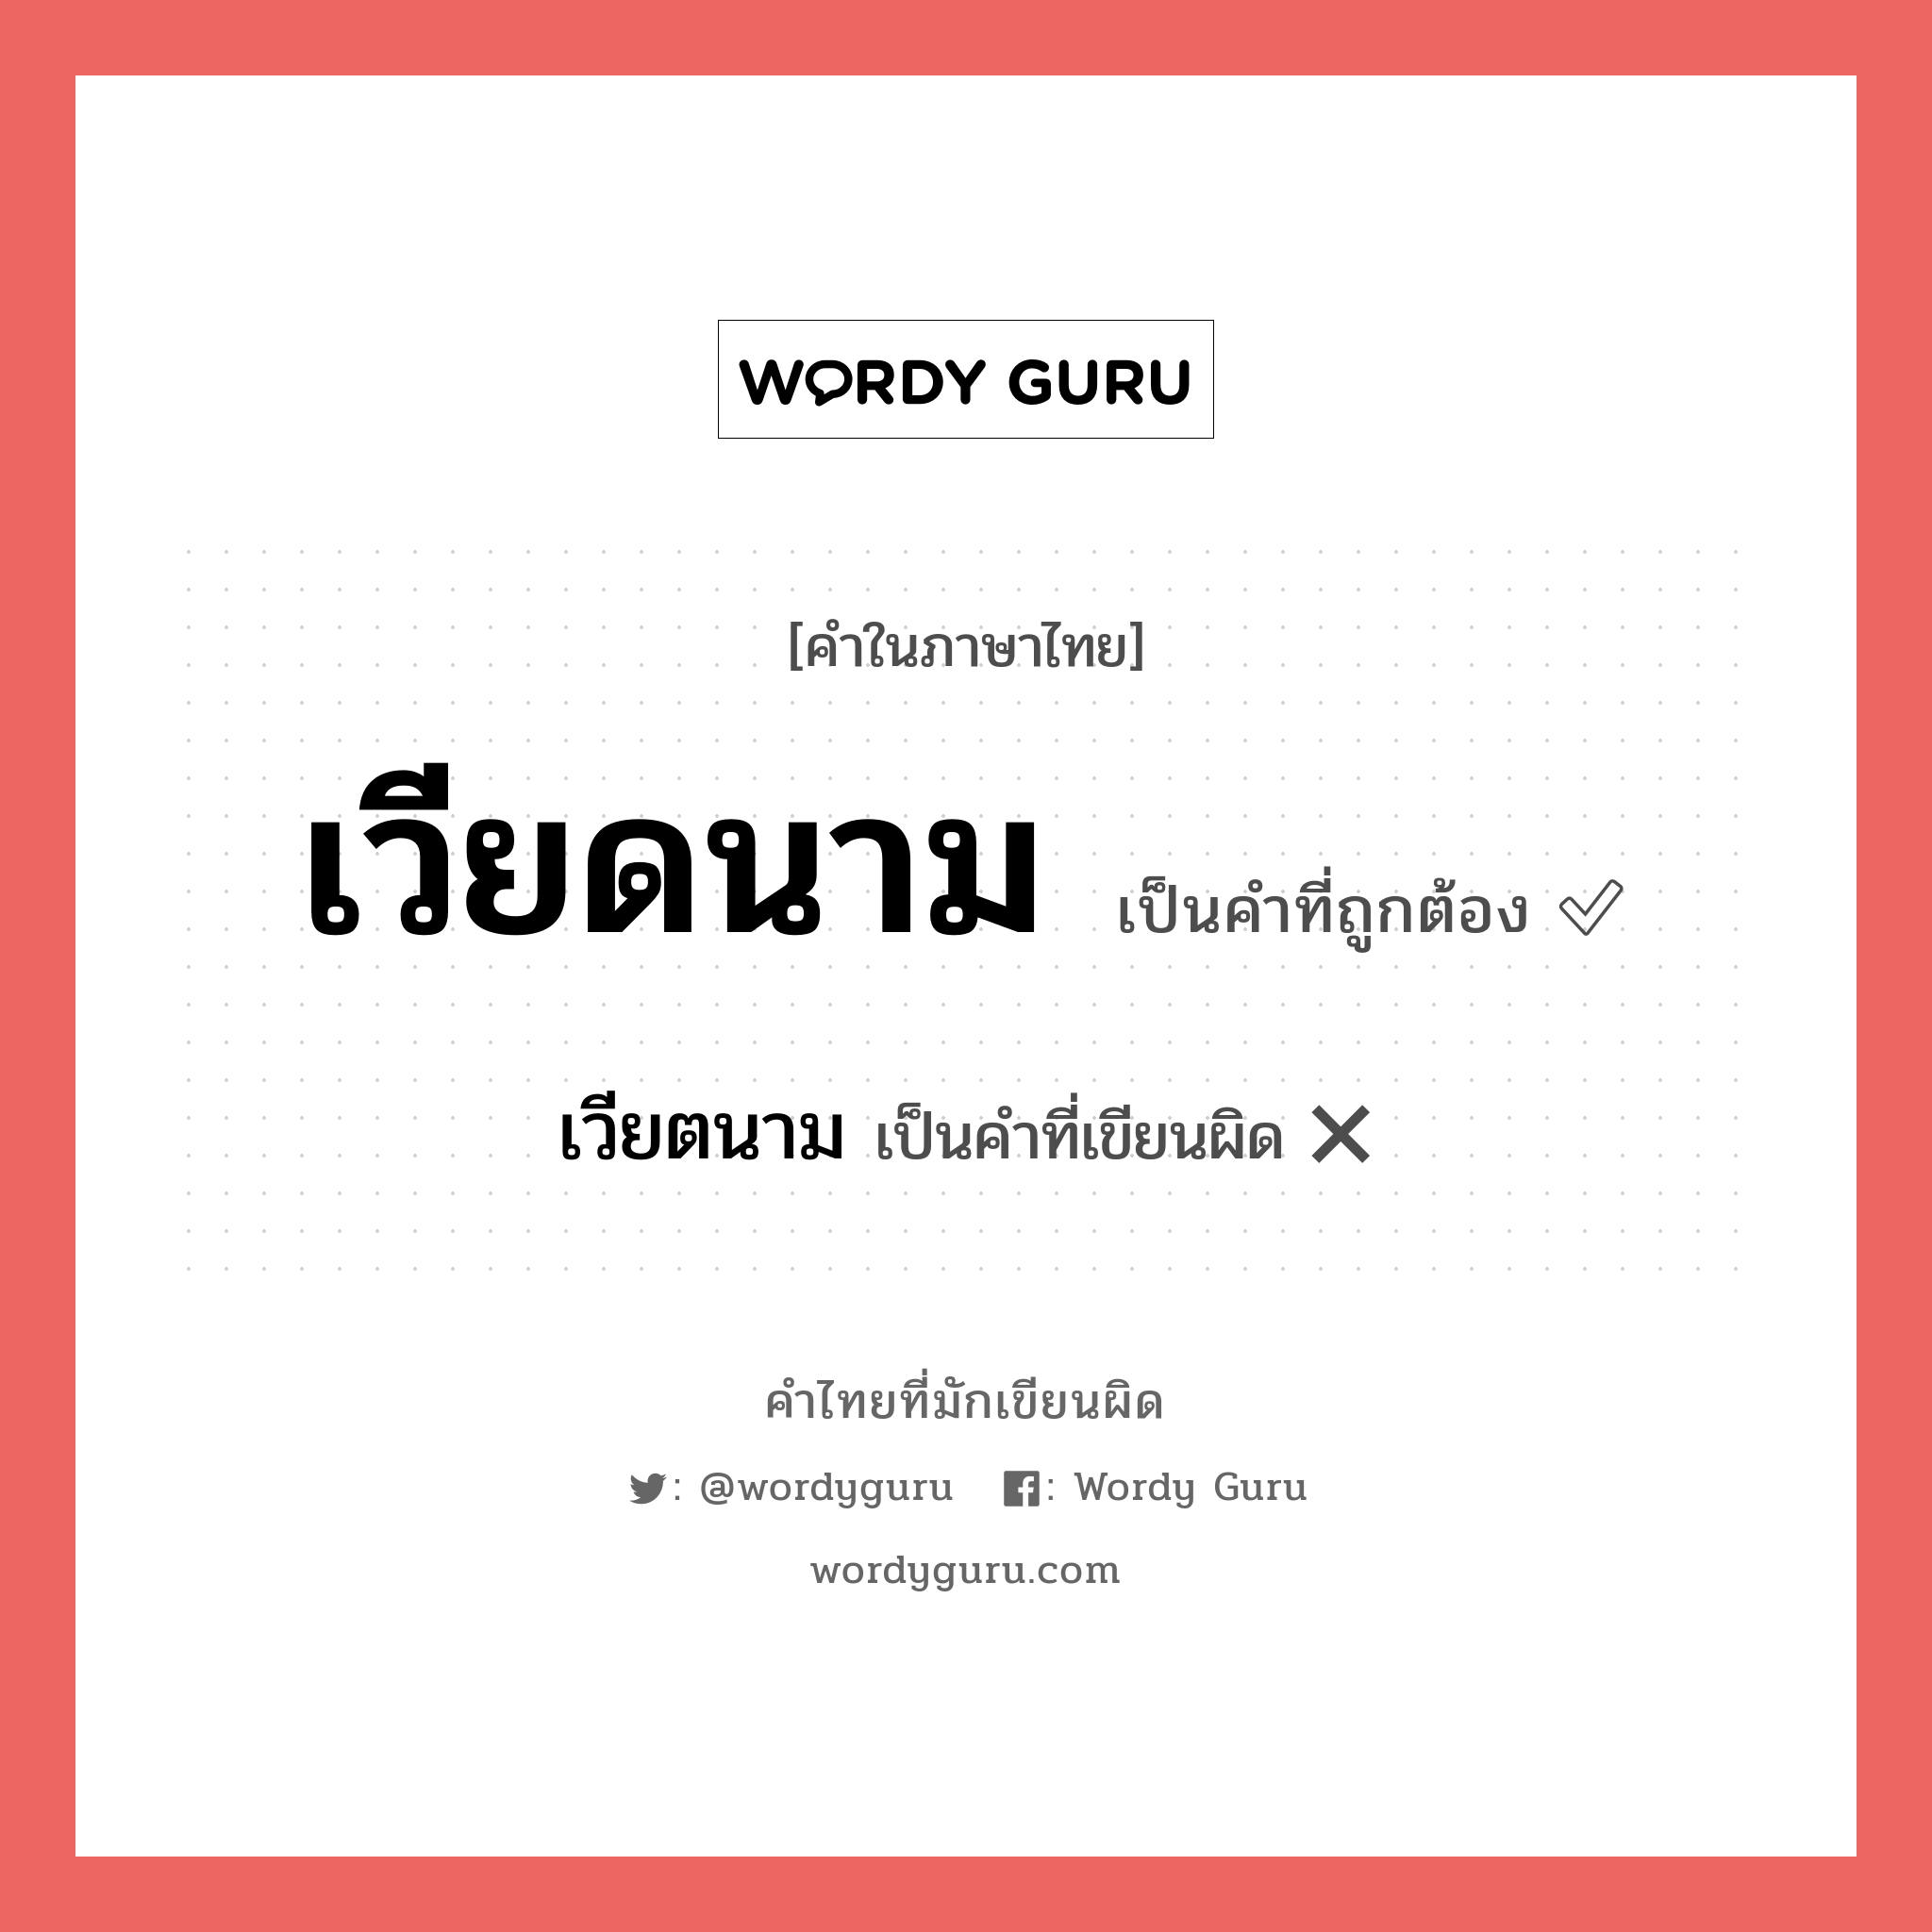 เวียดนาม หรือ เวียตนาม เขียนยังไง? คำไหนเขียนถูก?, คำในภาษาไทยที่มักเขียนผิด เวียดนาม คำที่ผิด ❌ เวียตนาม